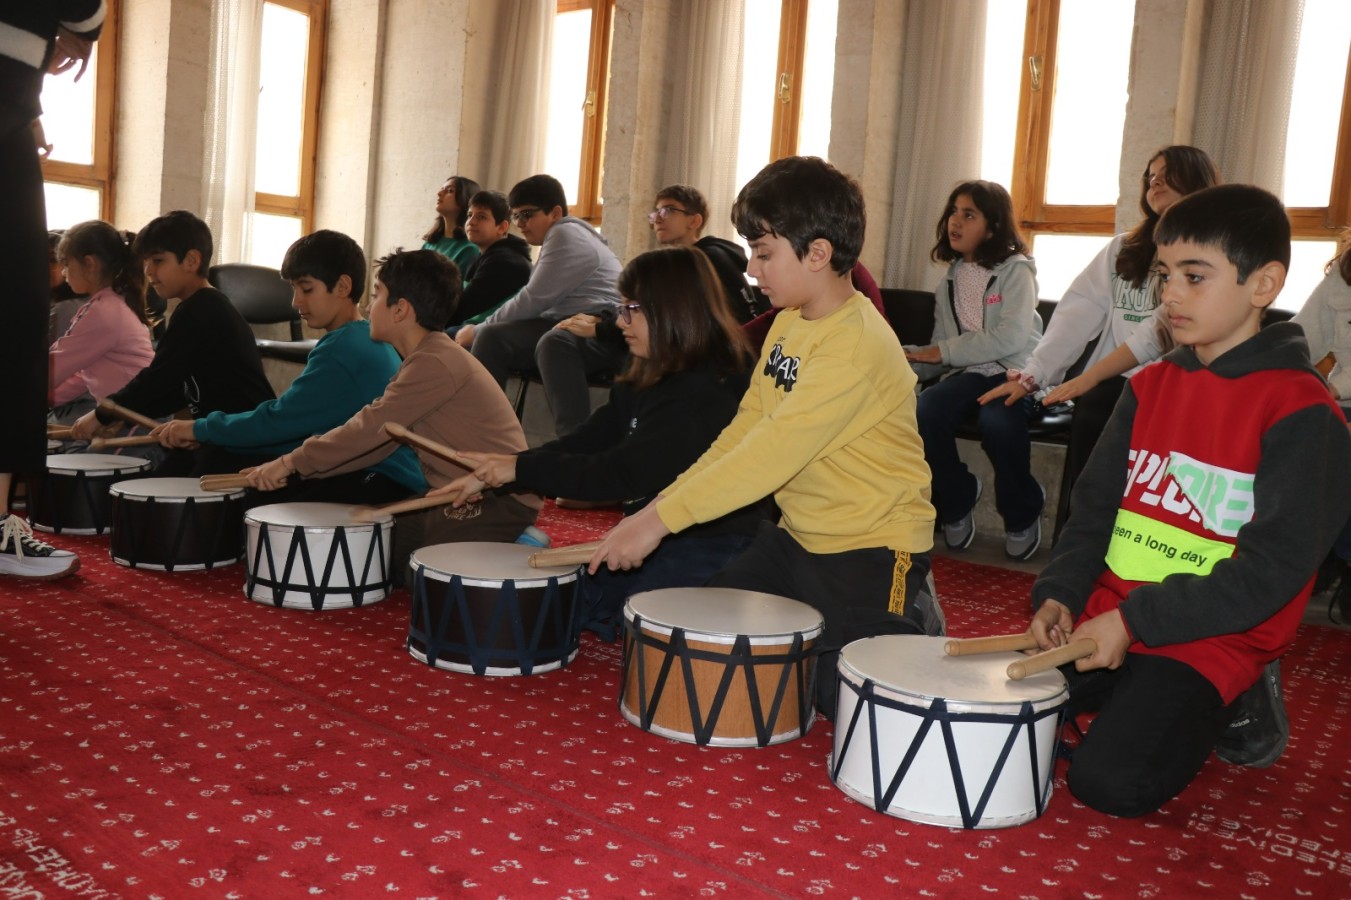 Büyükşehir çocuk konservatuarında çocuklara müzik eğitimi veriliyor;